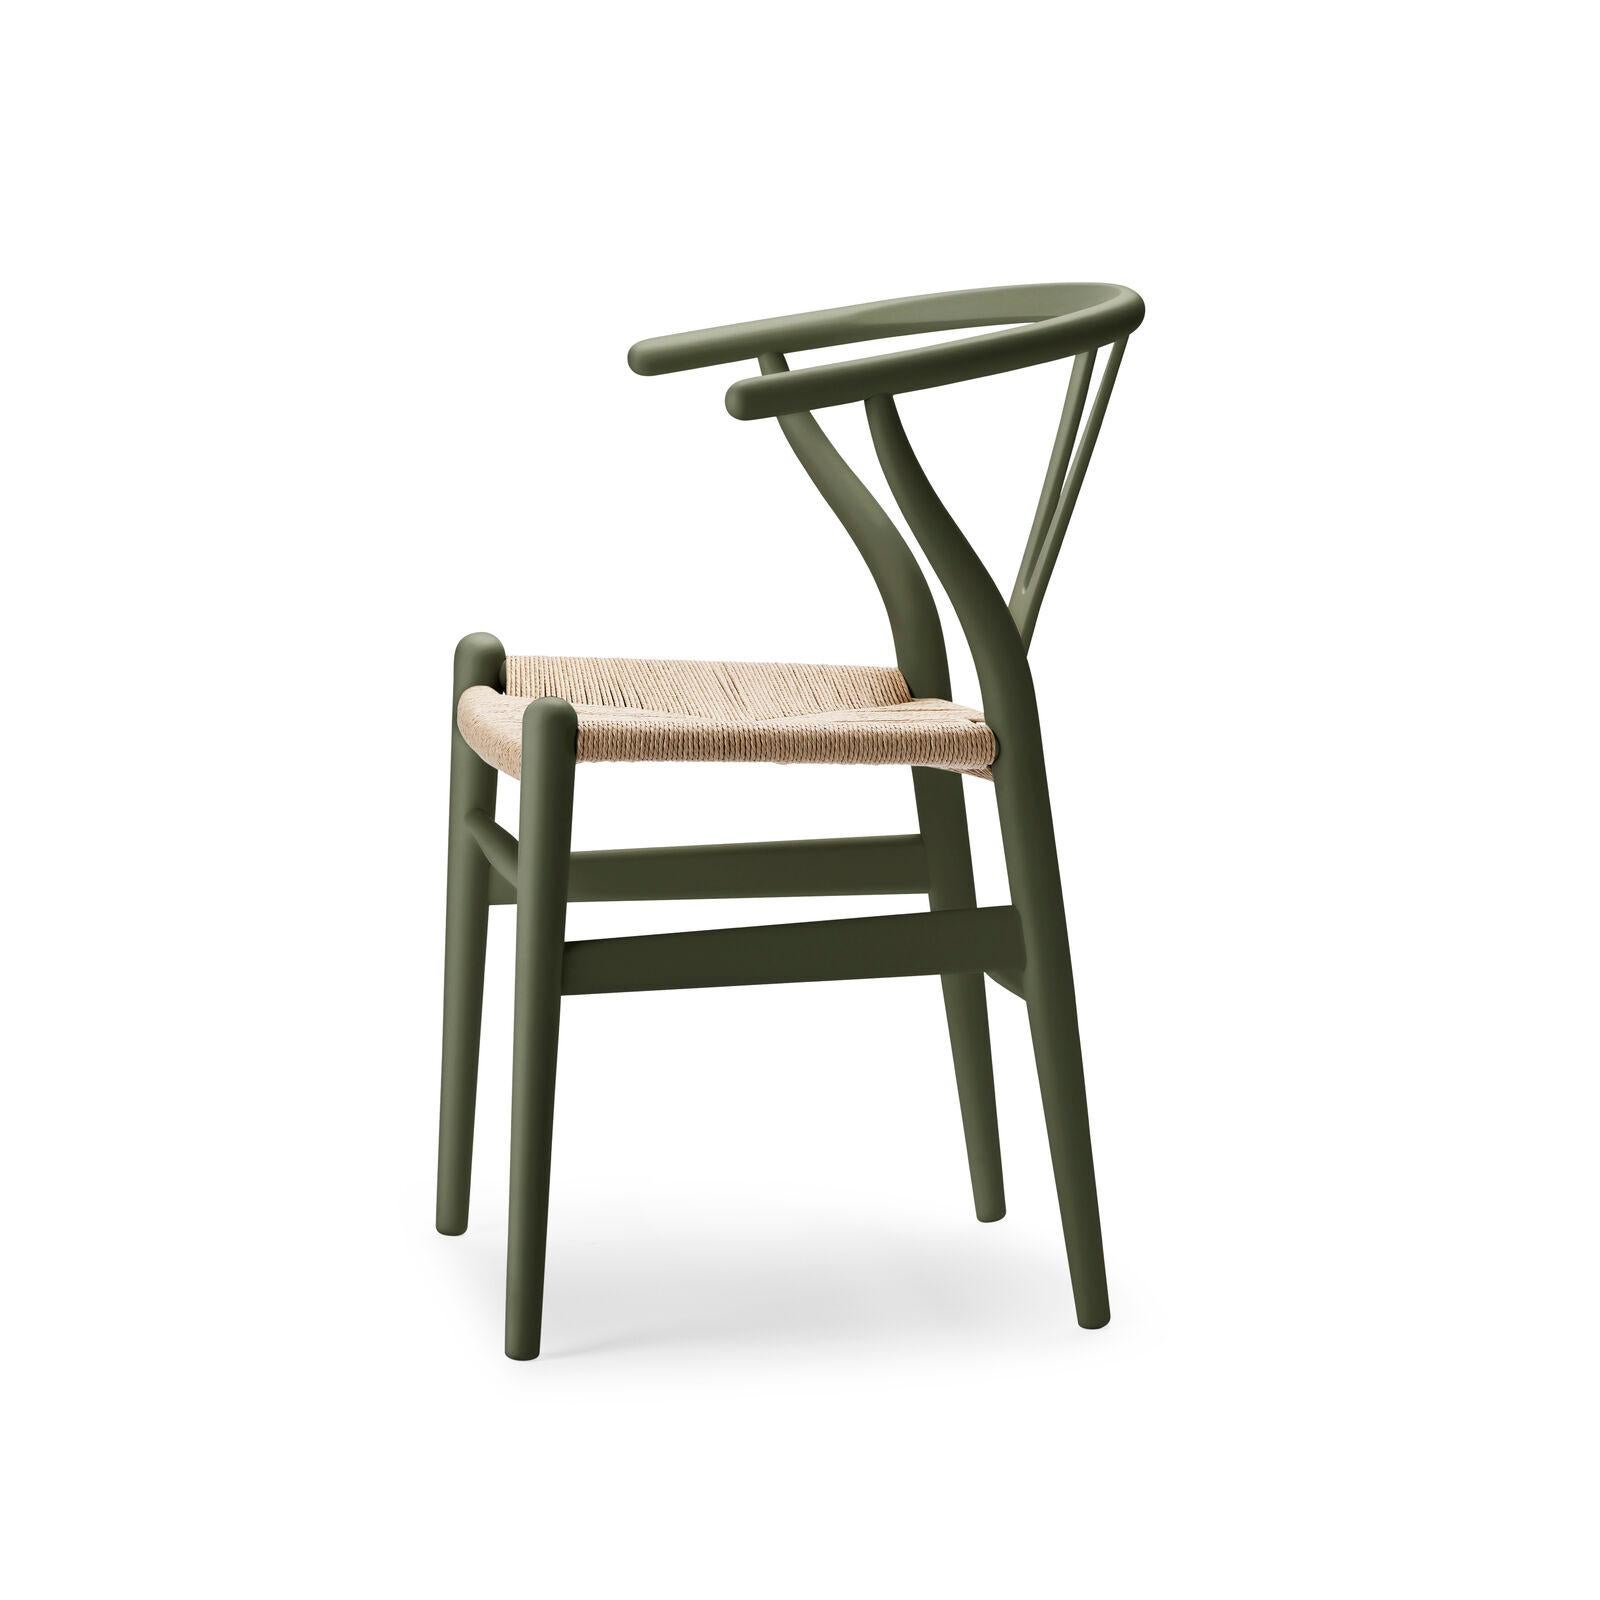 Pour célébrer plus de 70 ans de Collaboration entre Carl Hansen & Søn et Hans J. Wegner, la designer Ilse Crawford réinterprète la chaise CH24 Wishbone Chair dans une palette de neuf couleurs à la fois douces et complexes.